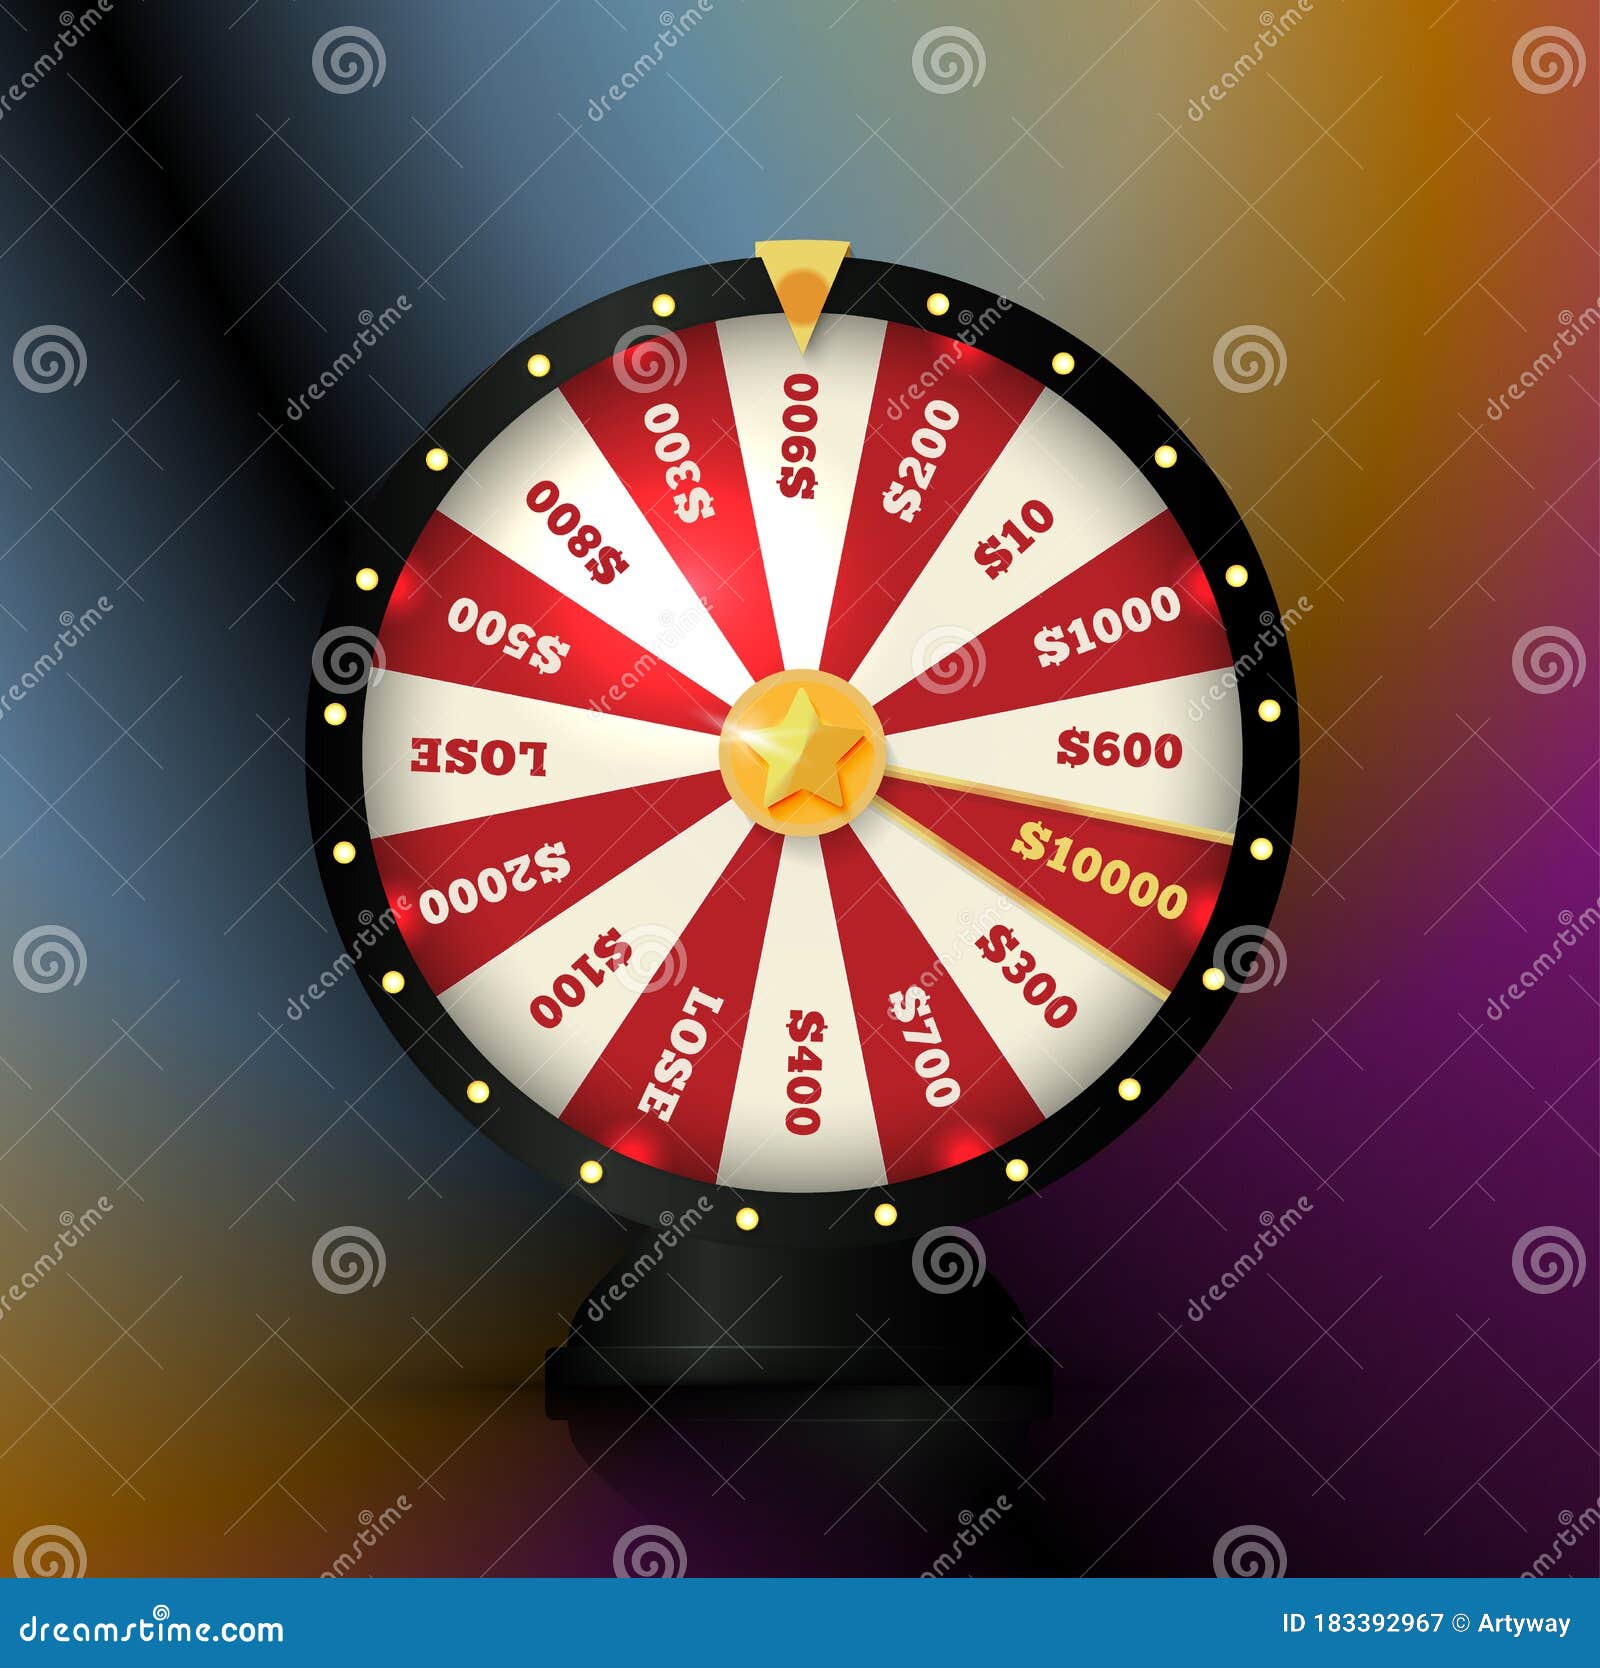 Spinner Wheel Roulette Stock Illustrations – 25 Spinner Wheel Roulette  Stock Illustrations, Vectors & Clipart - Dreamstime